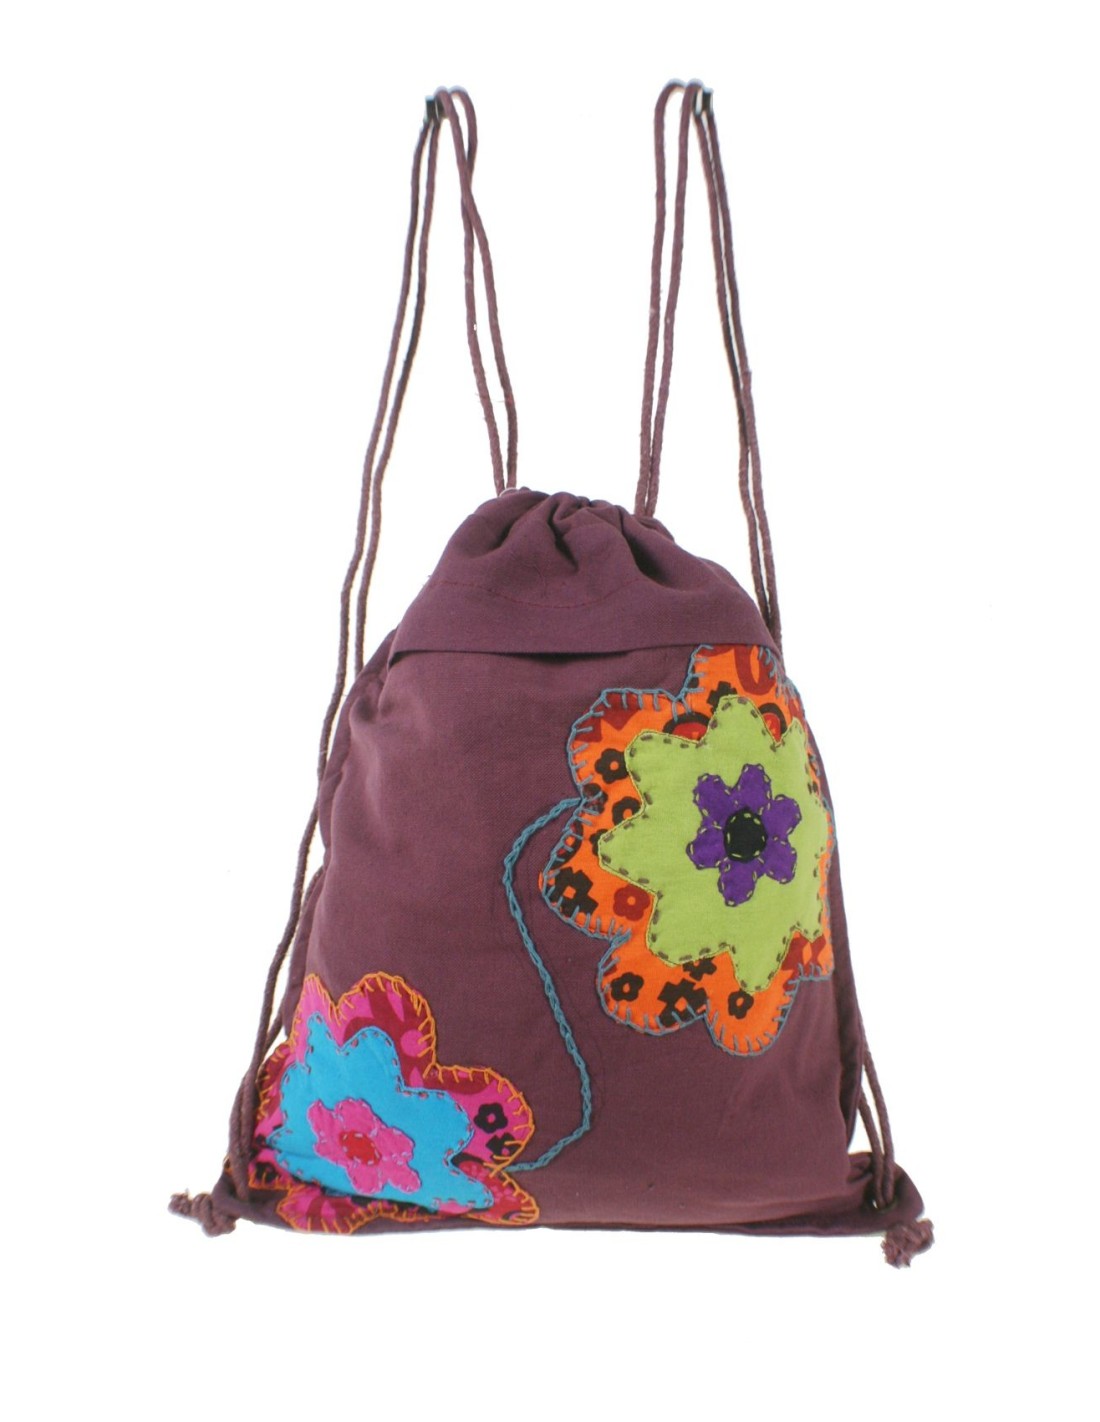 Mochila bolsa cuerdas hippie bordado color granate